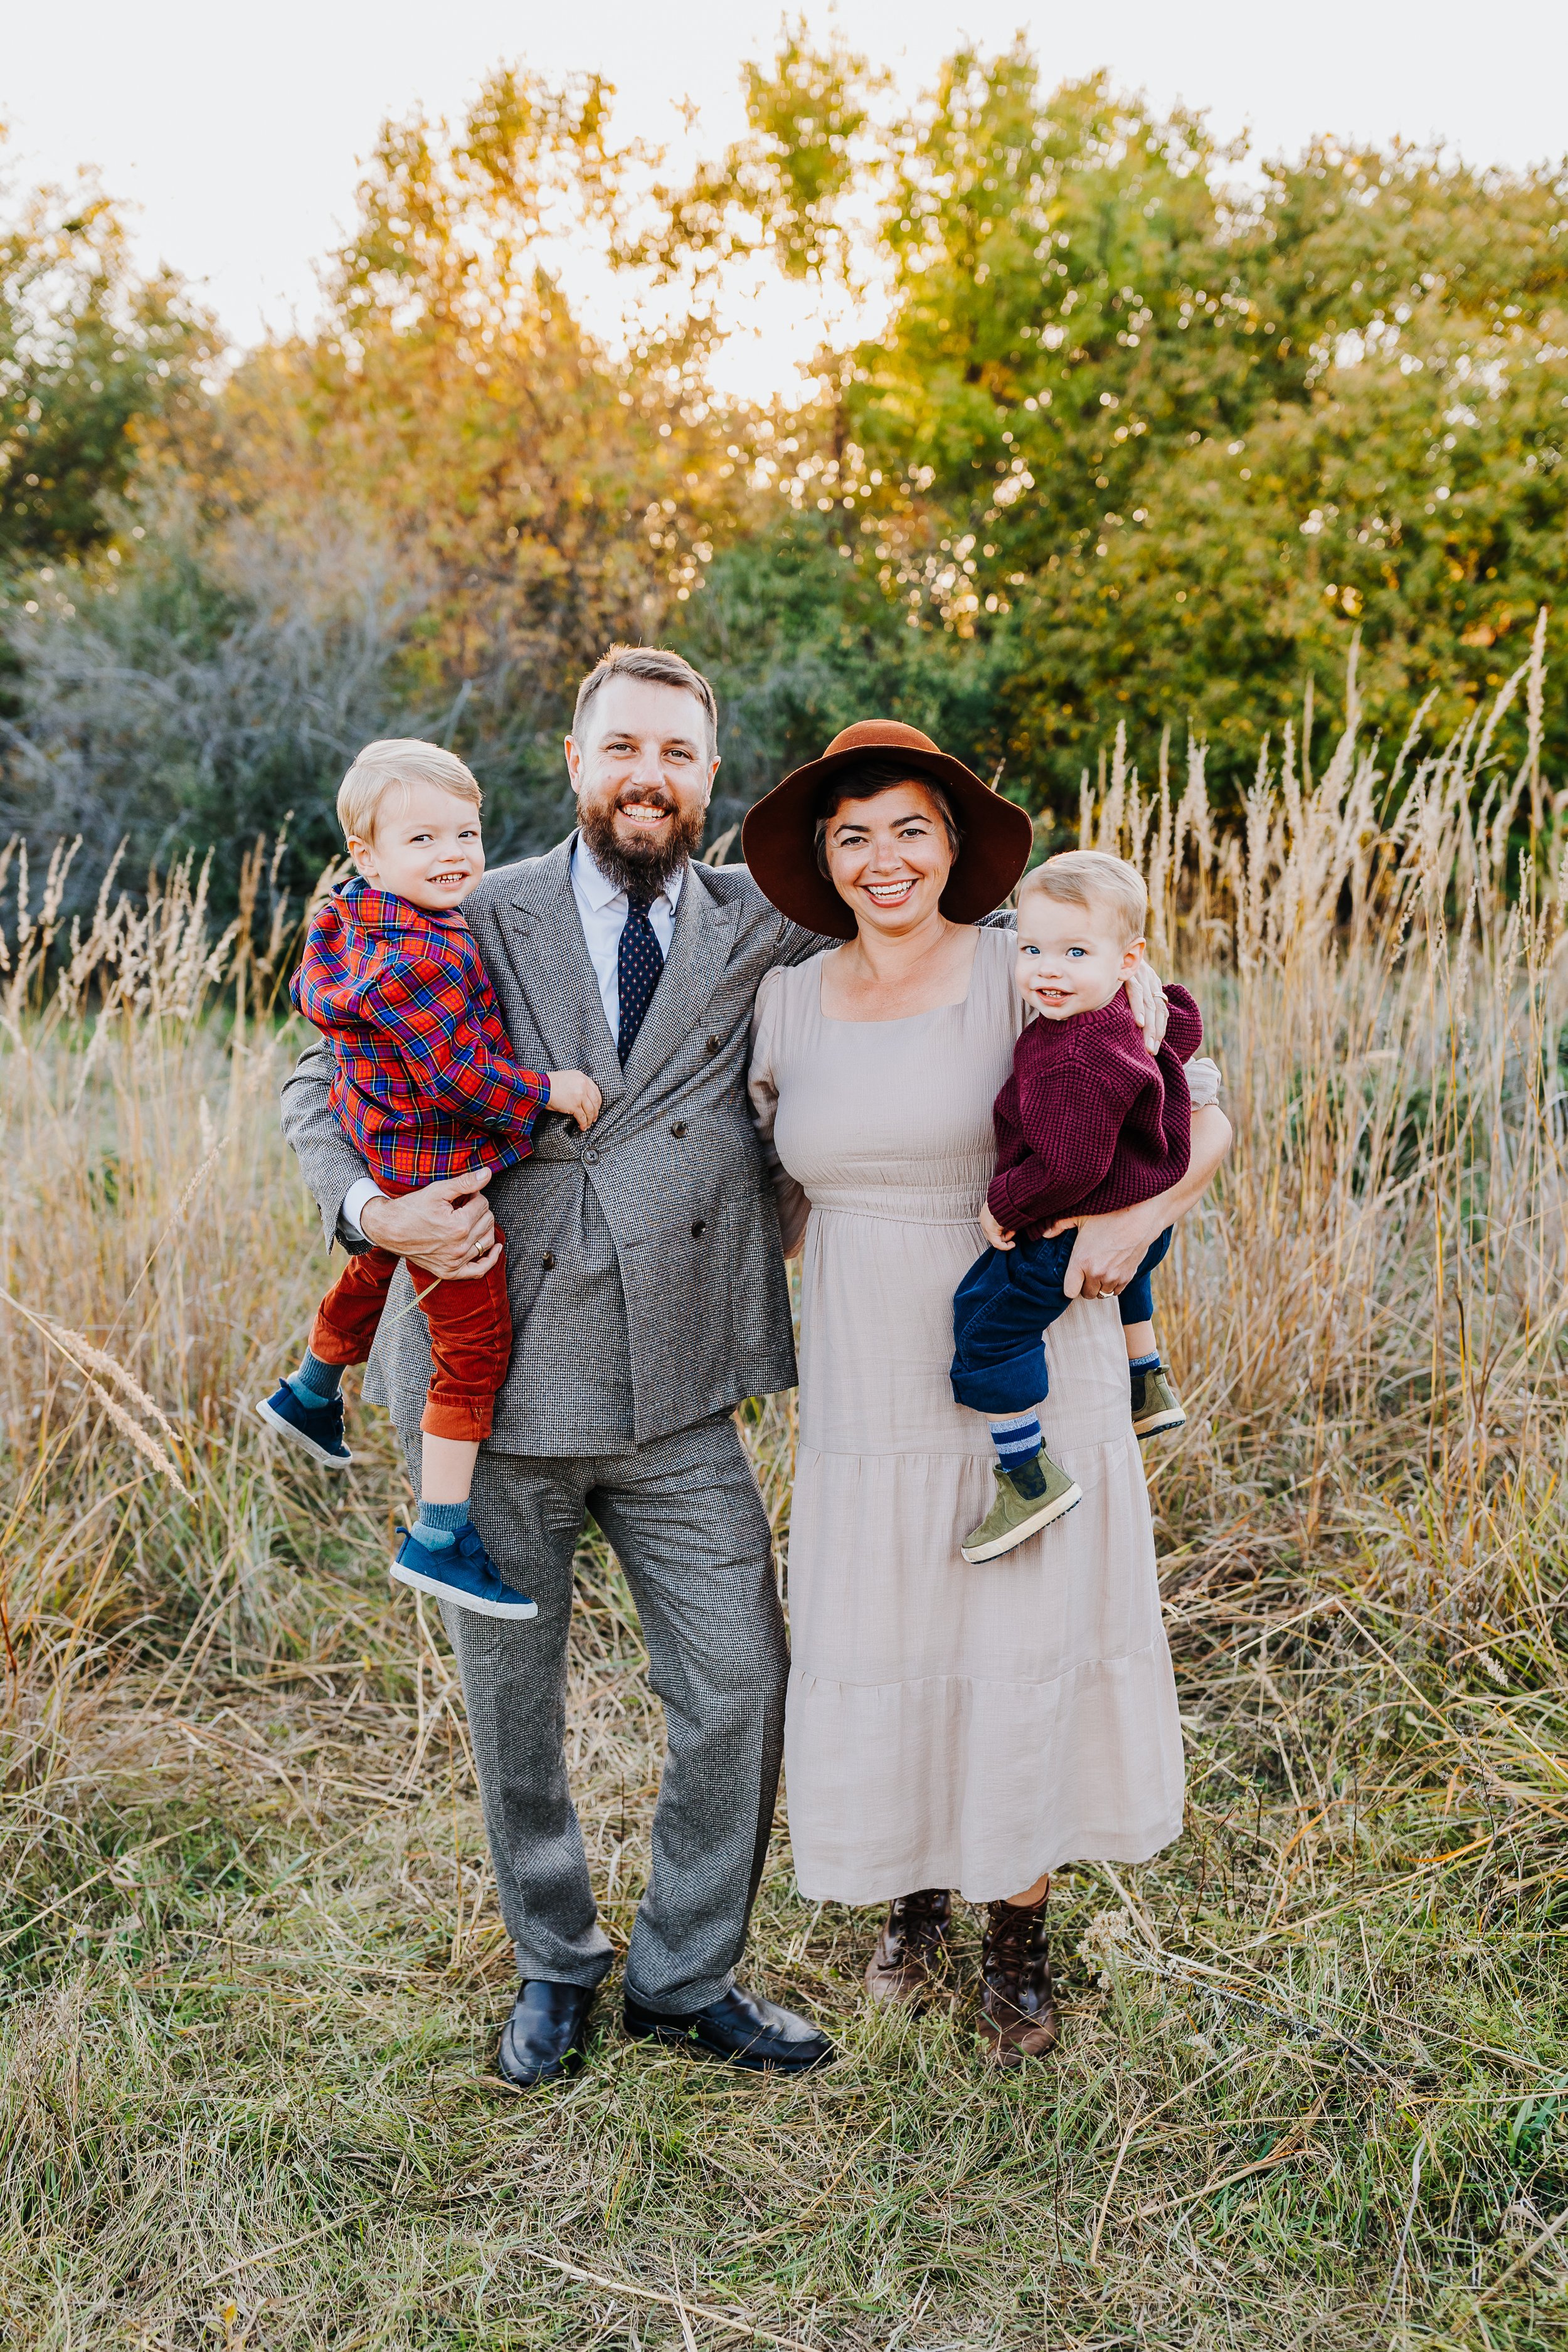 Hopp-Atkinson Family 2021 - Nathaniel Jensen Photography - Omaha Nebraska Family Photographer-6.jpg